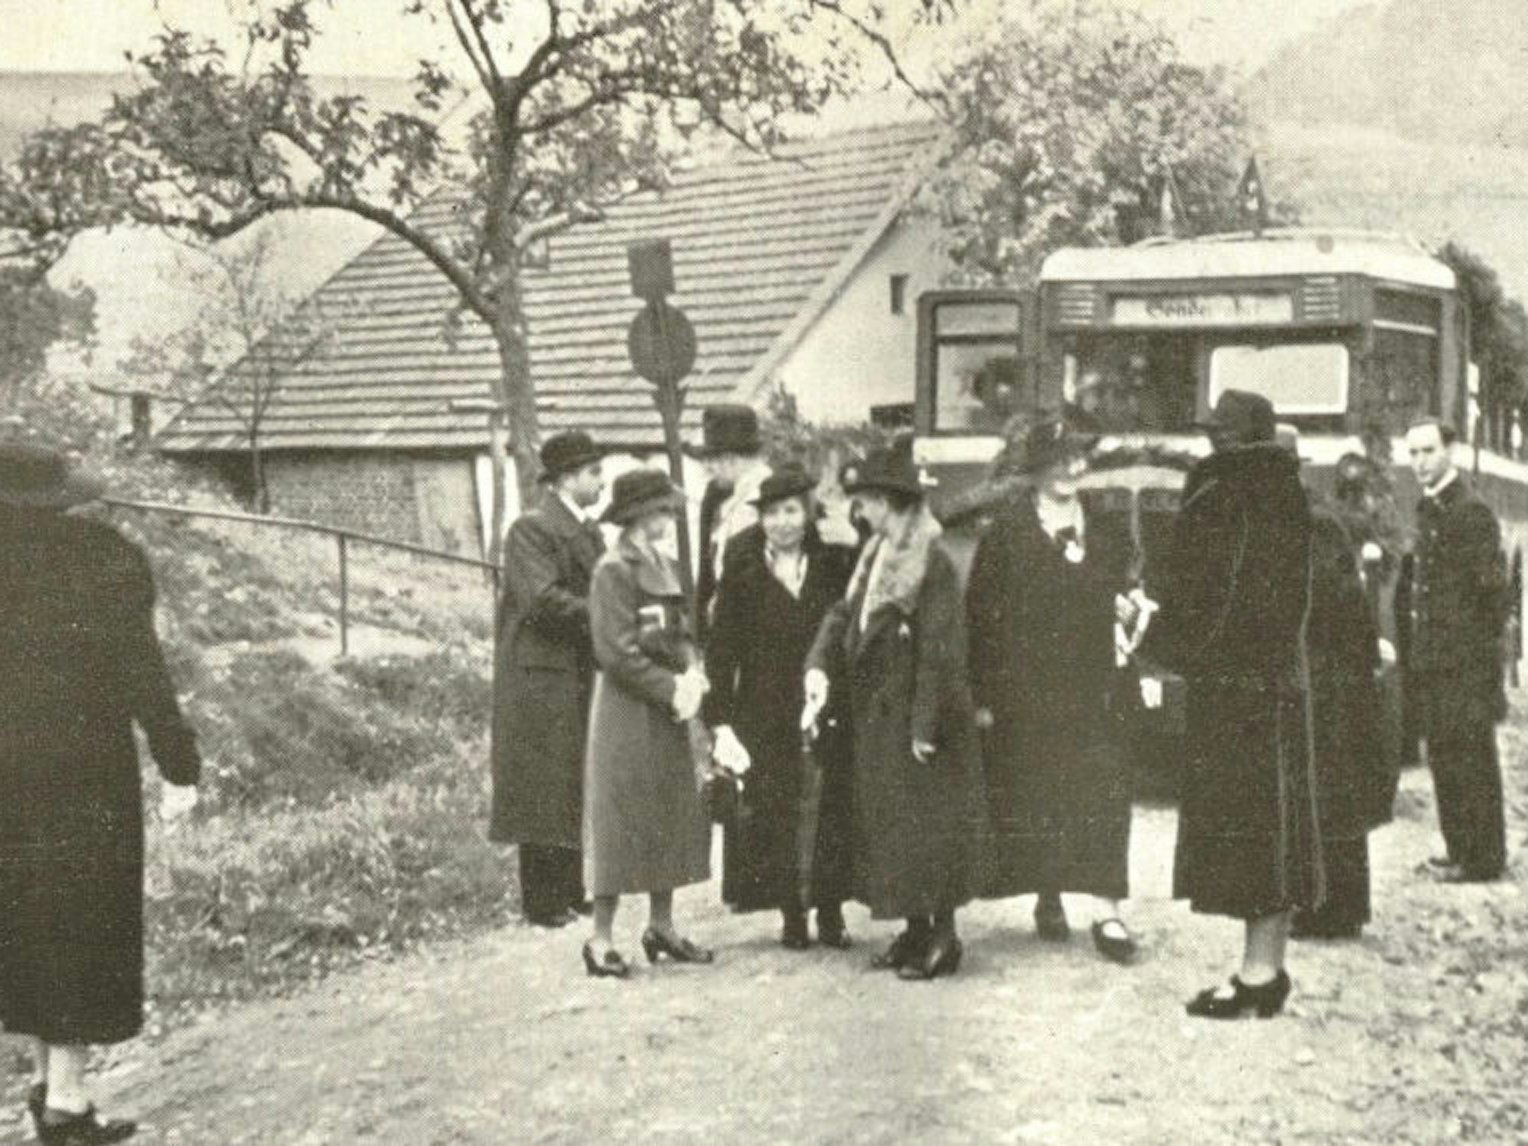 Bilder aus der Mitarbeiterzeitschrift, hier die Feier der Silberjubilare von Oktober 1937. Postbusse brachten sie von Köln nach Overath.